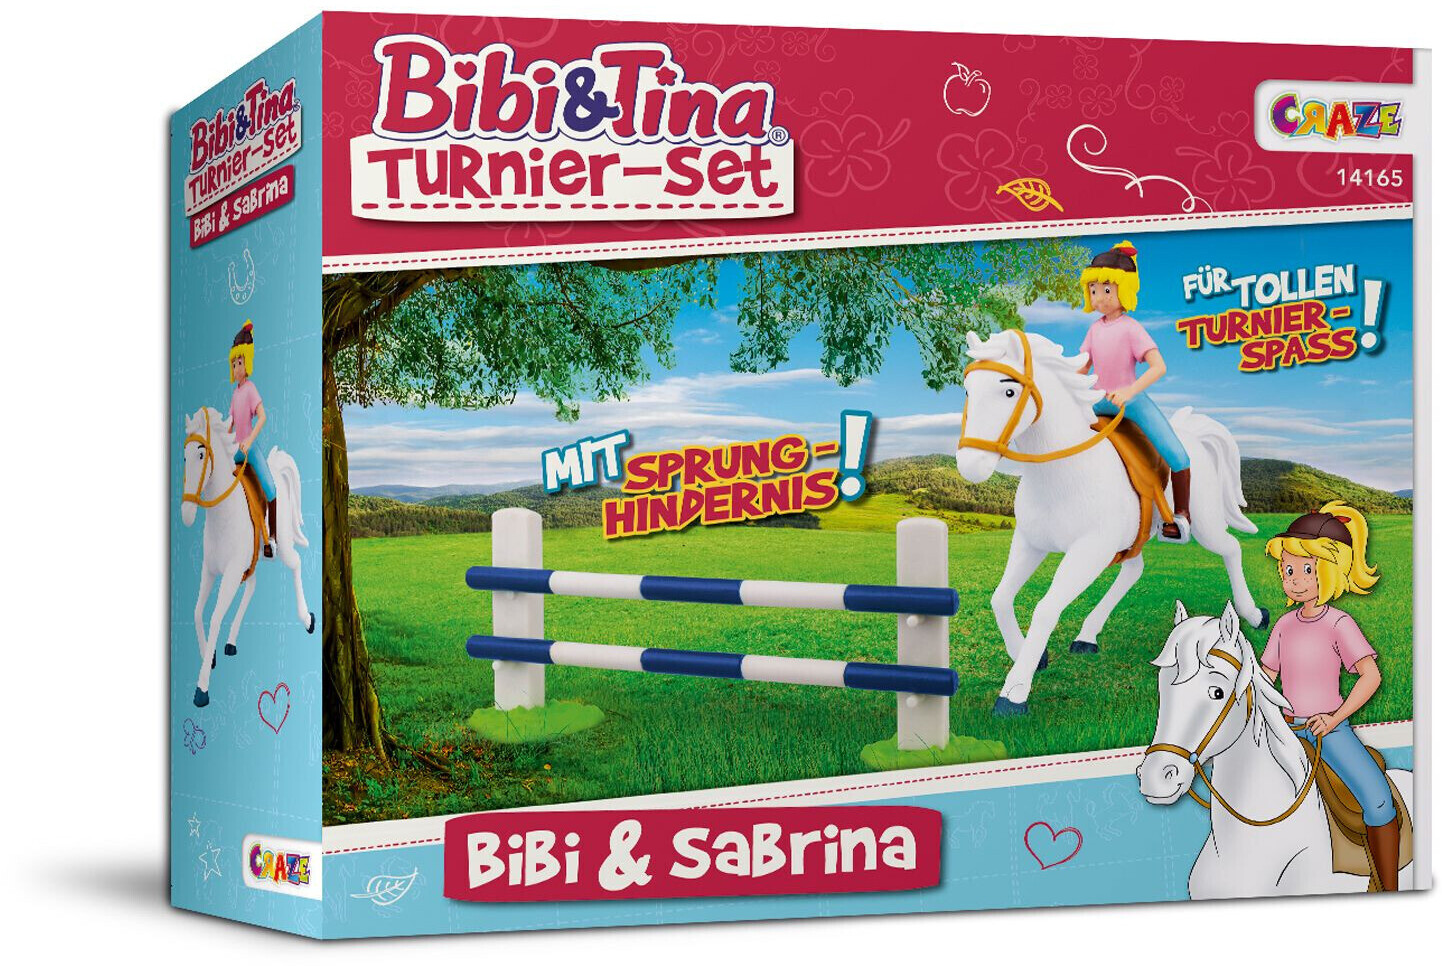 Tina Turnierset und Bibi - ab Sabrina € (14165) Preisvergleich | Bibi Craze bei und 16,99